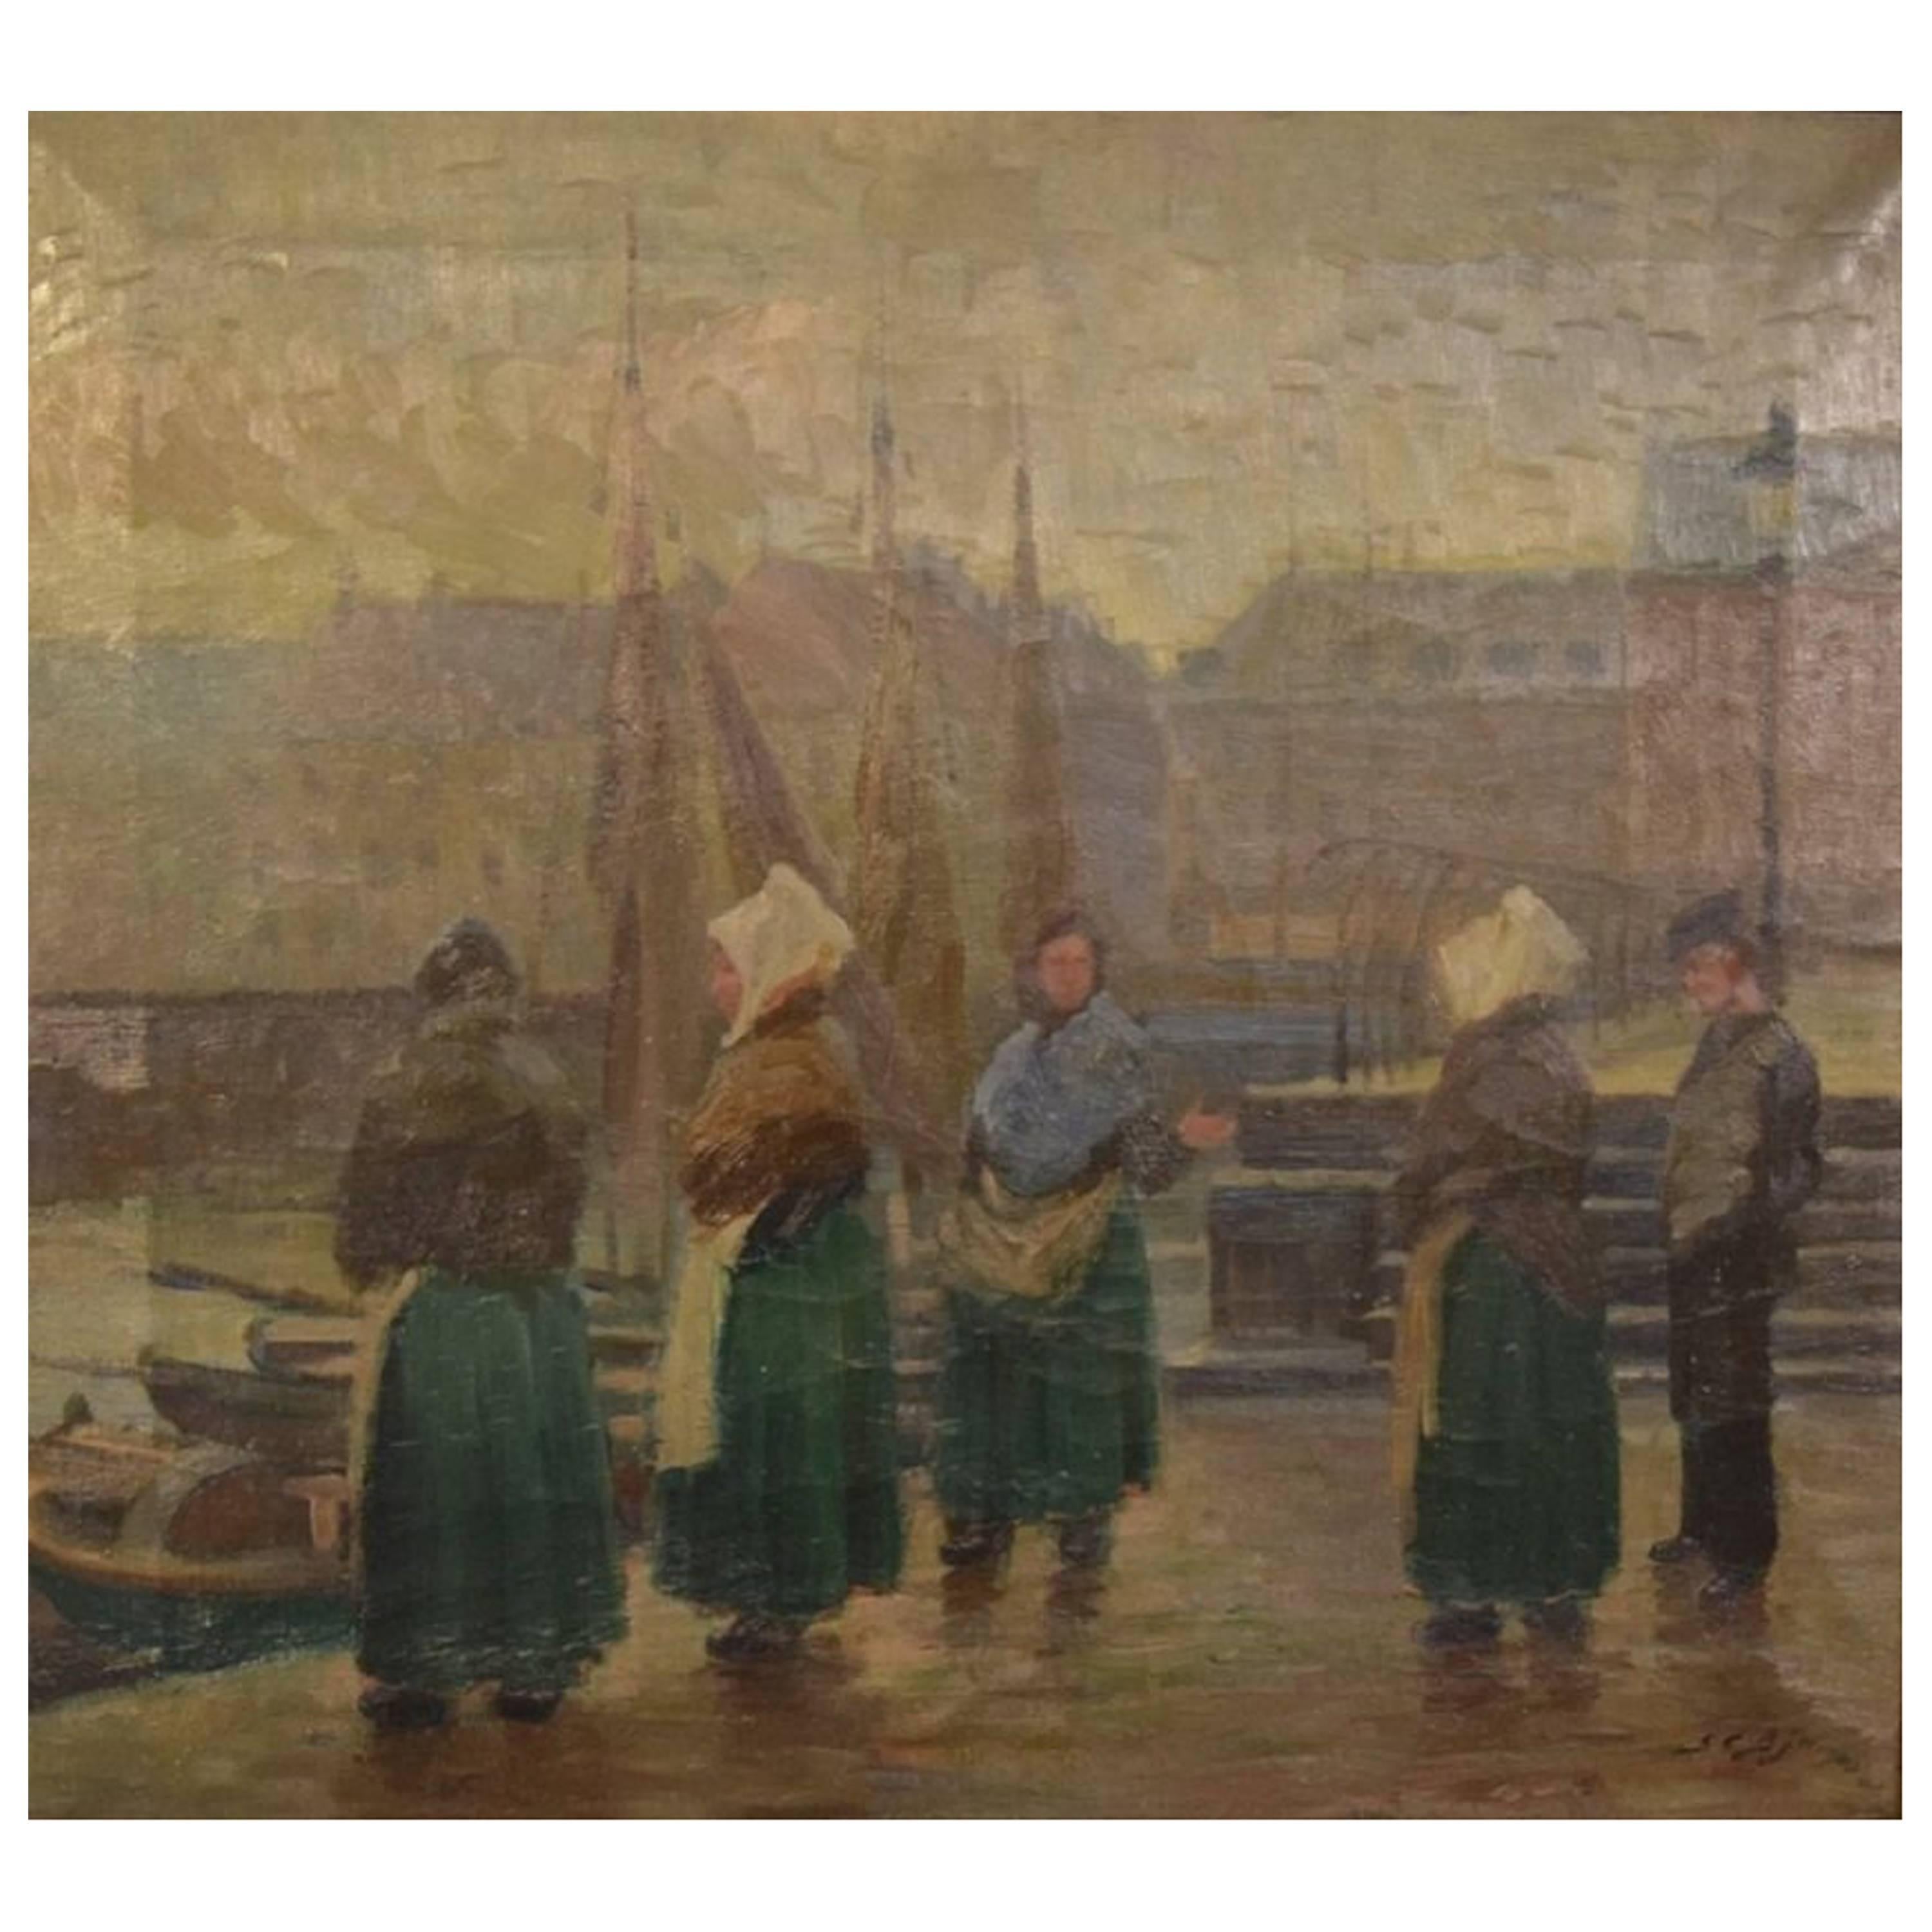 Søren Christian Bjulf, Pêcheuses au vieux quai, Copenhague, huile sur toile